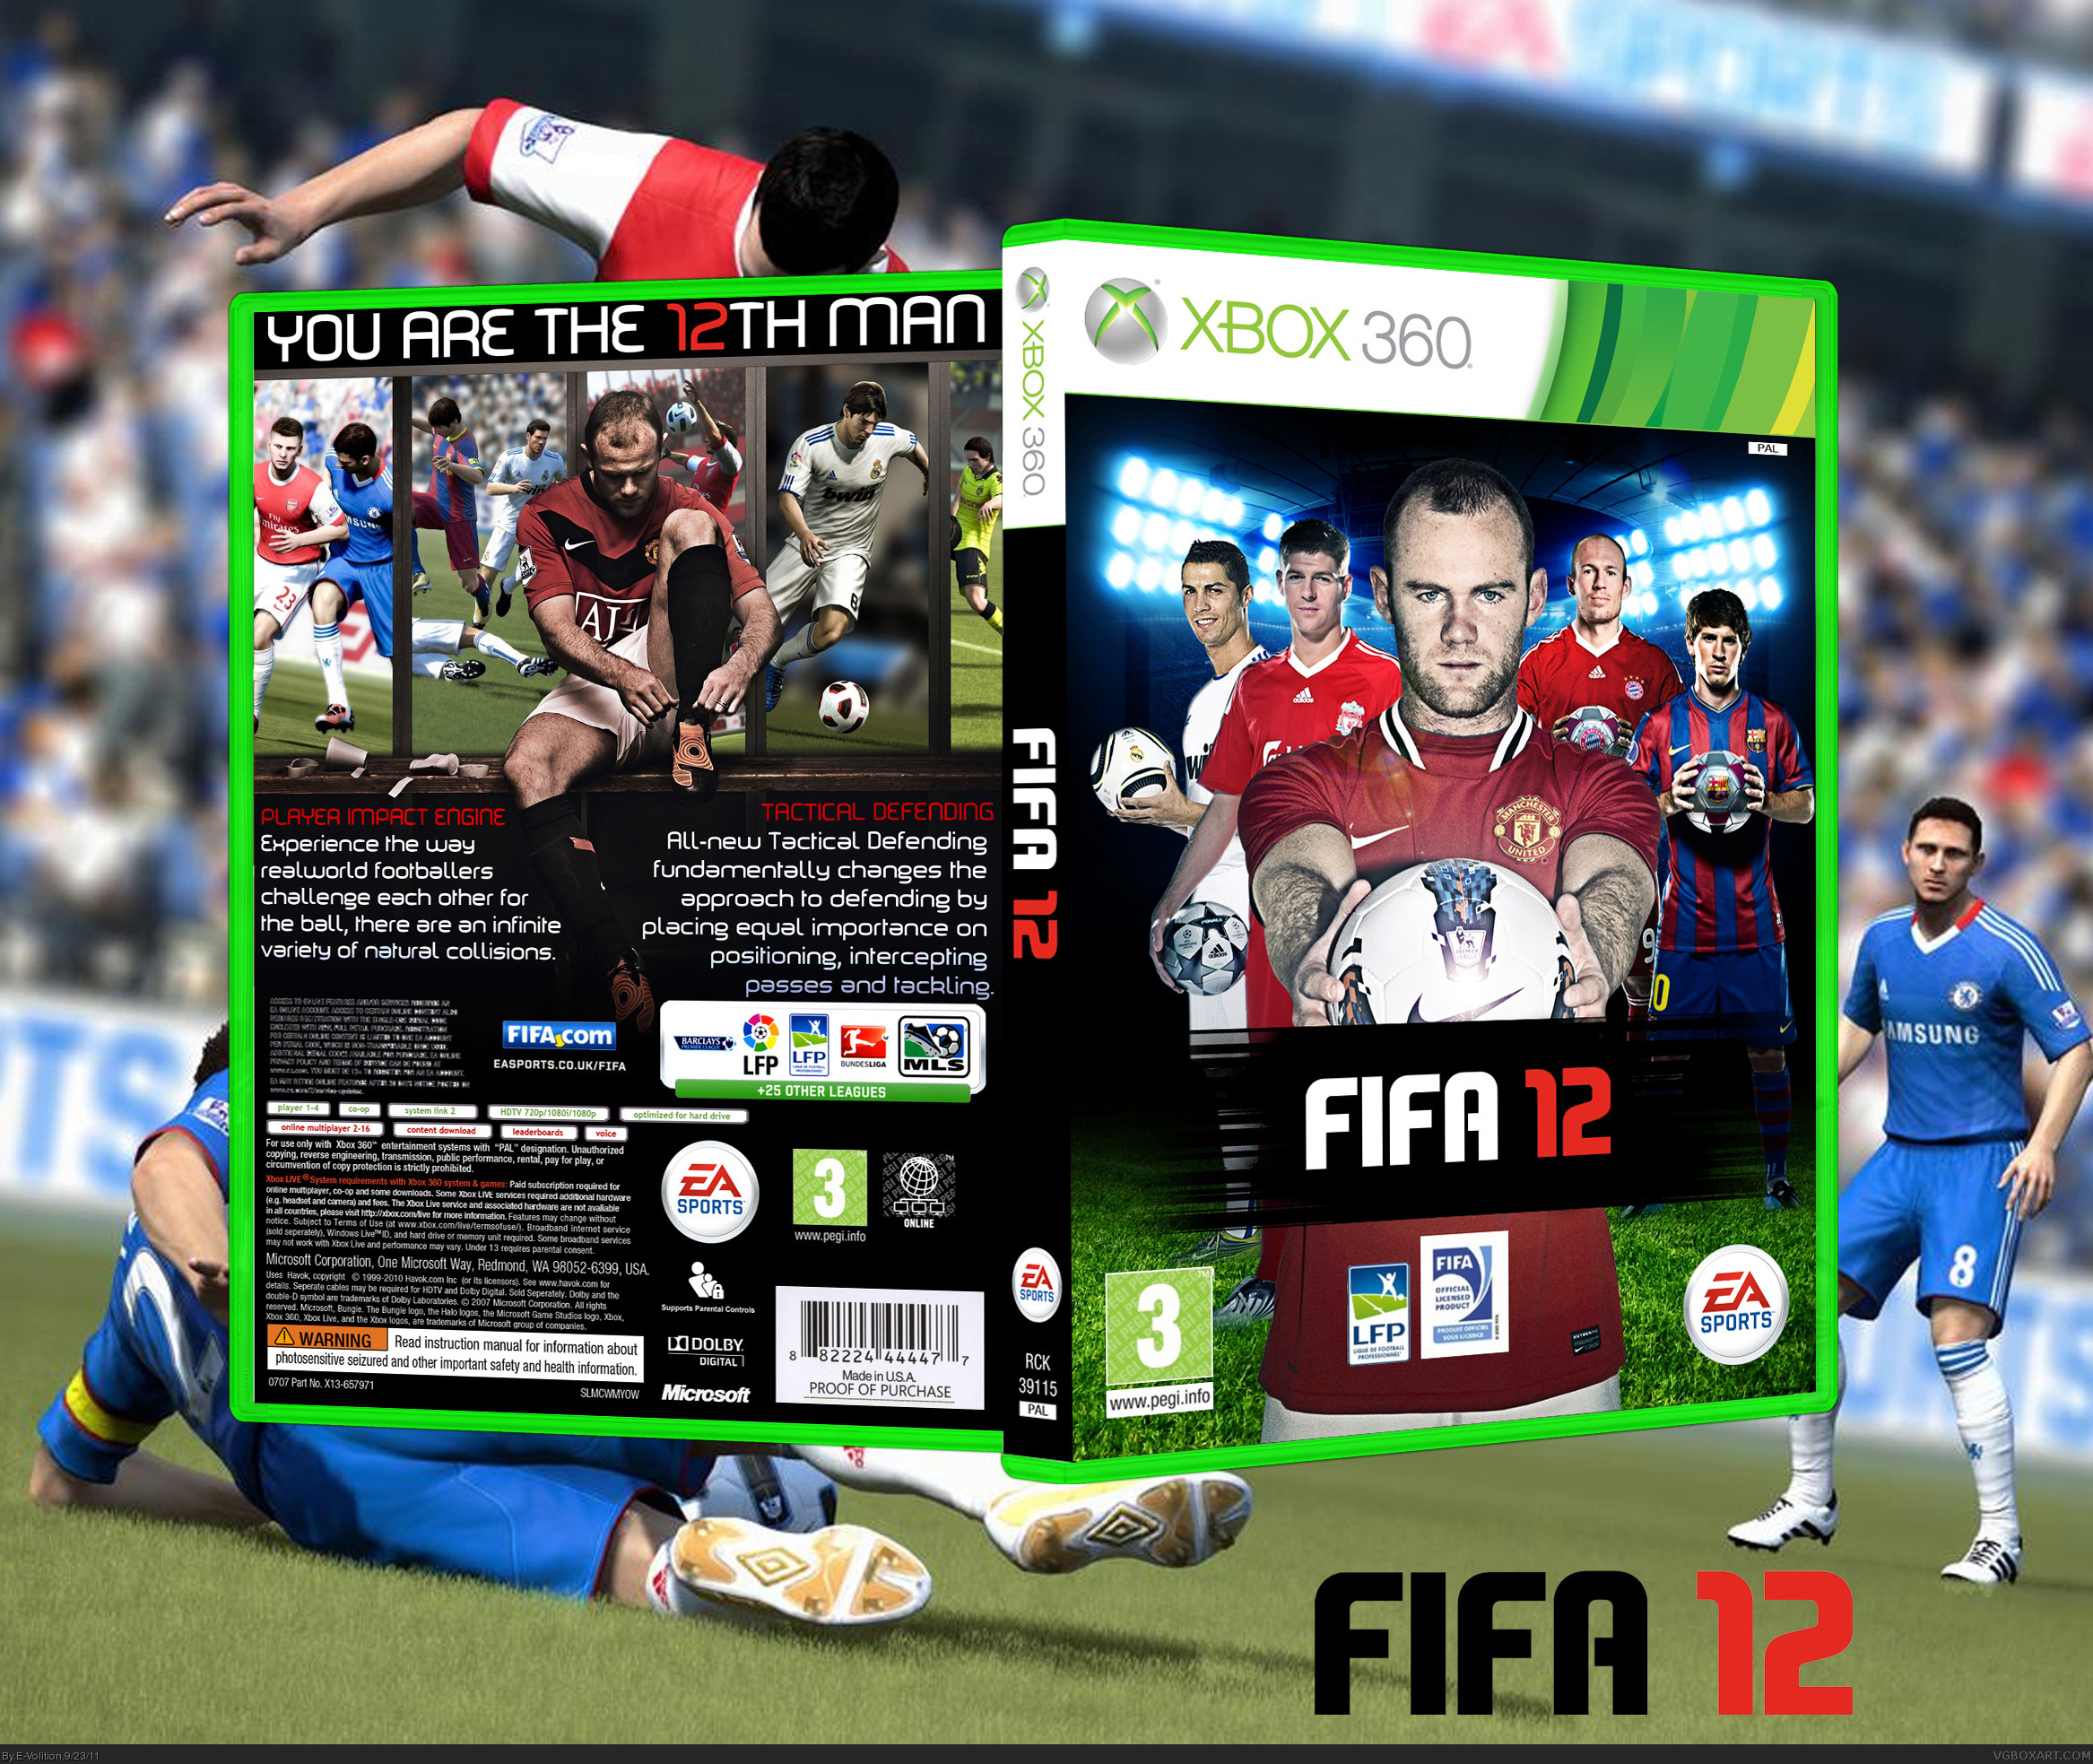 FIFA 12 box cover